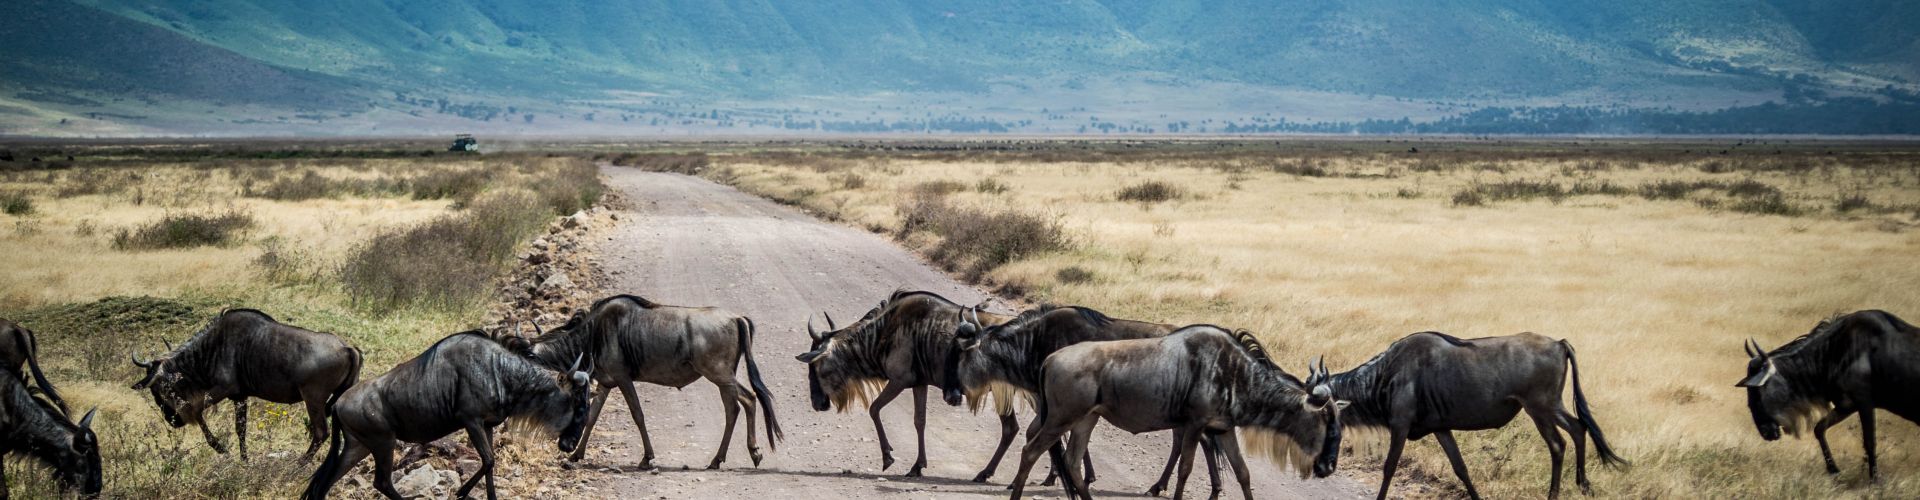 Gli gnu hanno diritto di precedenza nel cratere di Ngorongoro